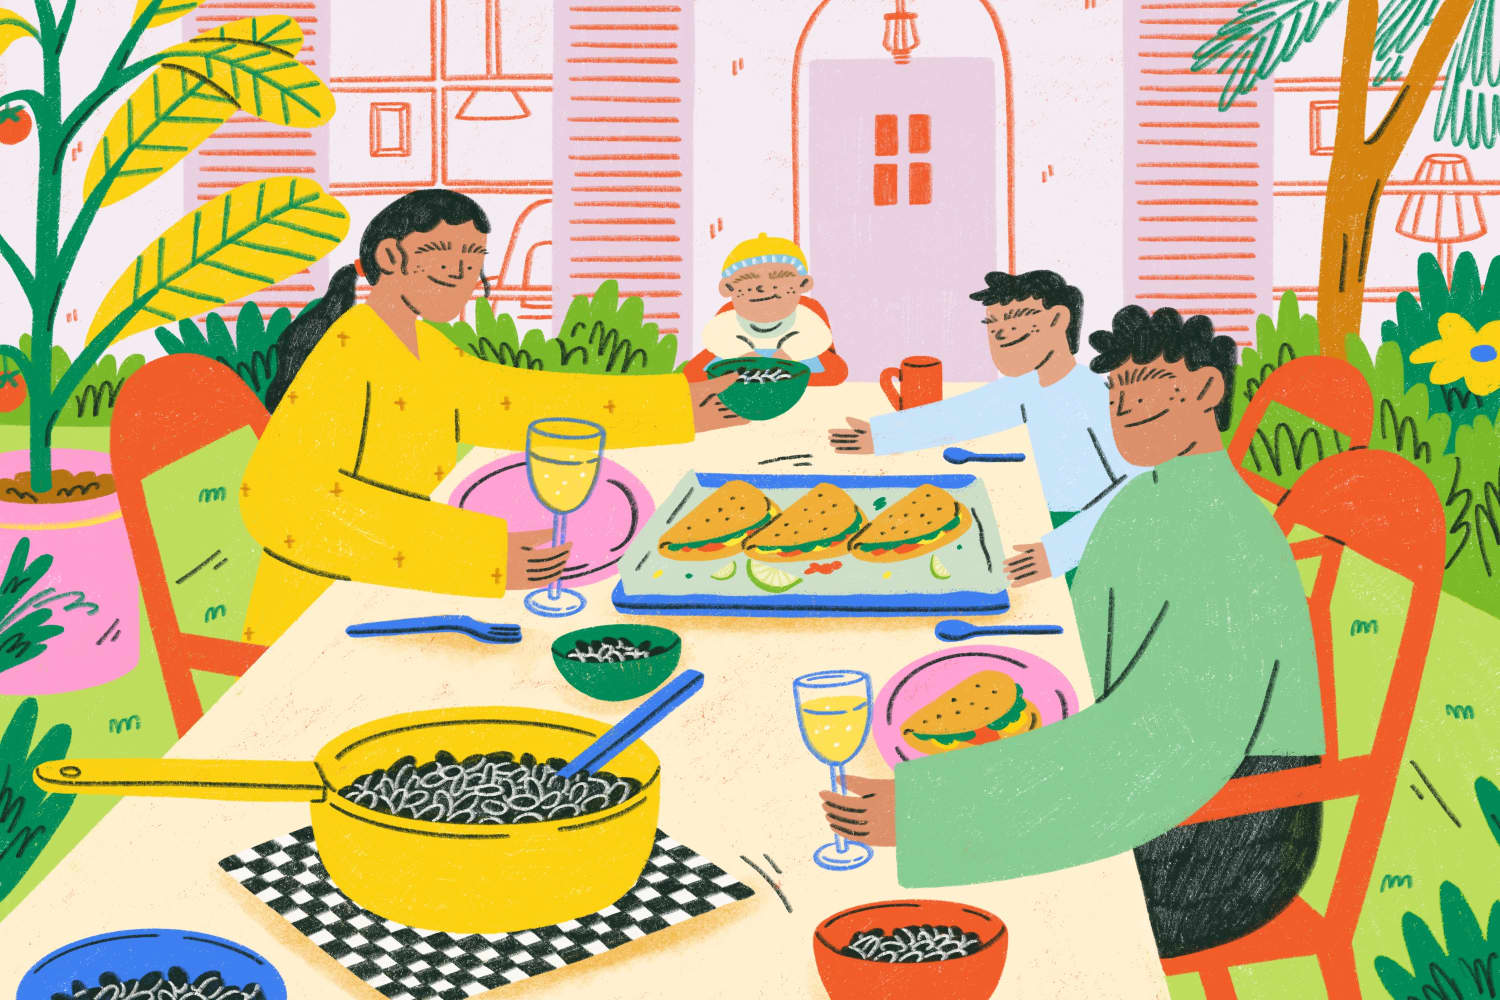 Tinh thần ẩm thực gia đình vẫn luôn là một phần quan trọng của đời sống người Việt, và công thức ăn gia đình là điều mà chúng ta không thể bỏ qua. Hãy cùng khám phá những công thức ăn gia đình ngon miệng và dễ làm trong các hình ảnh.